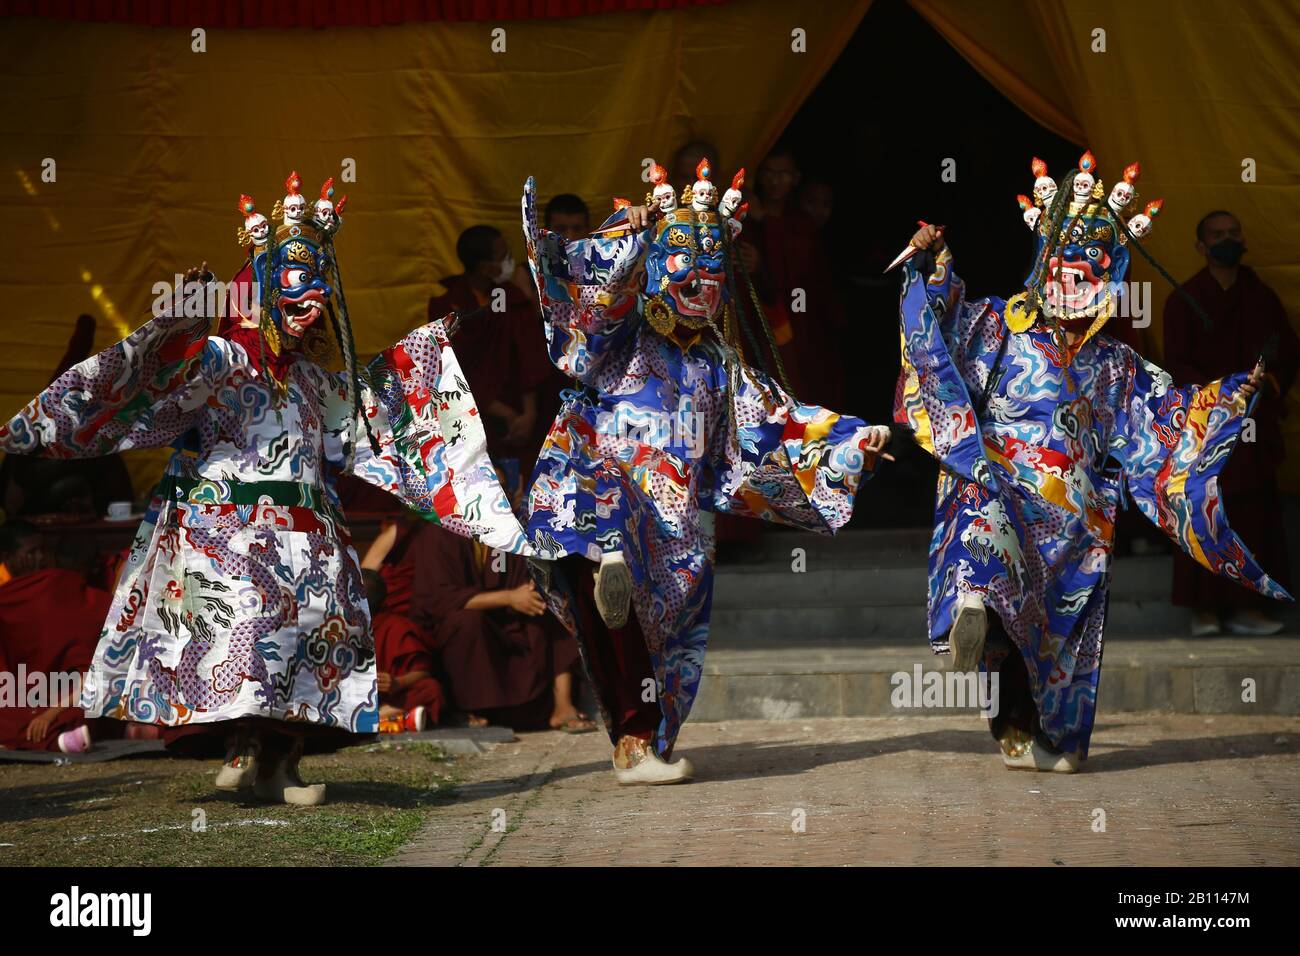 Katmandou, Népal. 22 février 2020. Le lama bouddhiste dans le masque rituel exécute la danse sacrée du Cham dans un monastère de Boudsha à Katmandou, au Népal, le samedi 22 février 2020. Crédit: Skanda Gautam/Zuma Wire/Alay Live News Banque D'Images